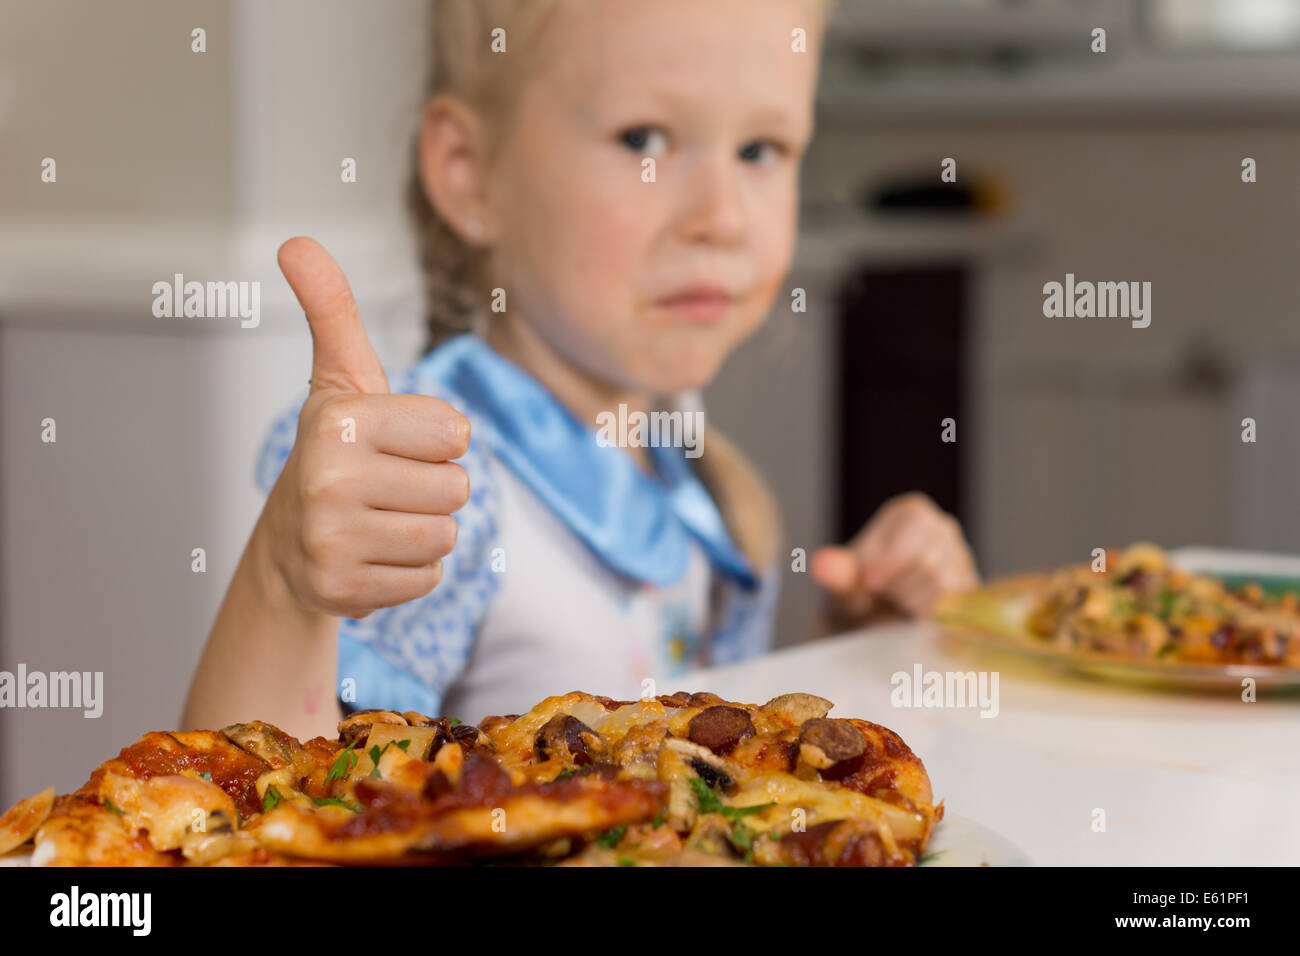 Piccola ragazza godendo di una piastra di pizze dando un pollice in alto di approvazione al segnale la sua approvazione e soddisfazione con un tast Foto Stock